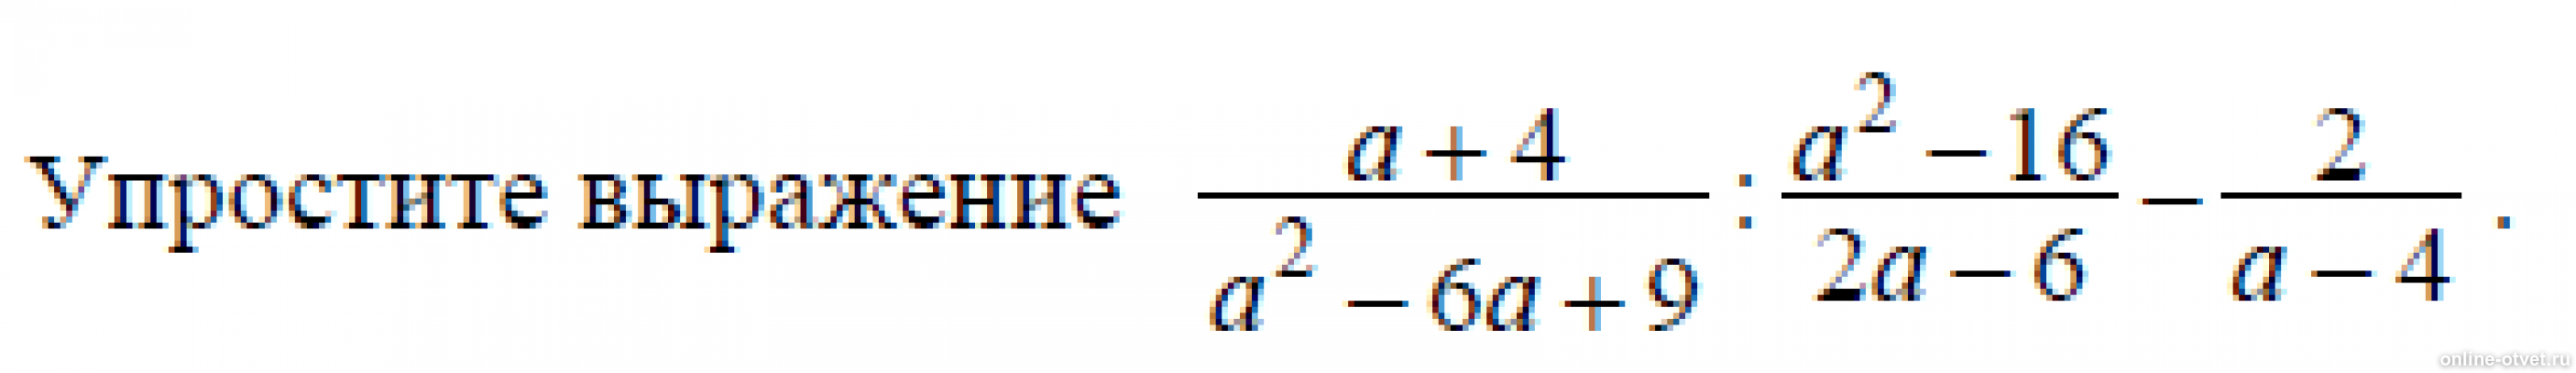 Упростите выражение 2b c. A-4/A^2+4+16 упростить выражение. Упростите выражение 4с с-2 с-4 2. Упростите выражения (a-8)^2. Упростите выражения а+2 а-3-4-а а+4.